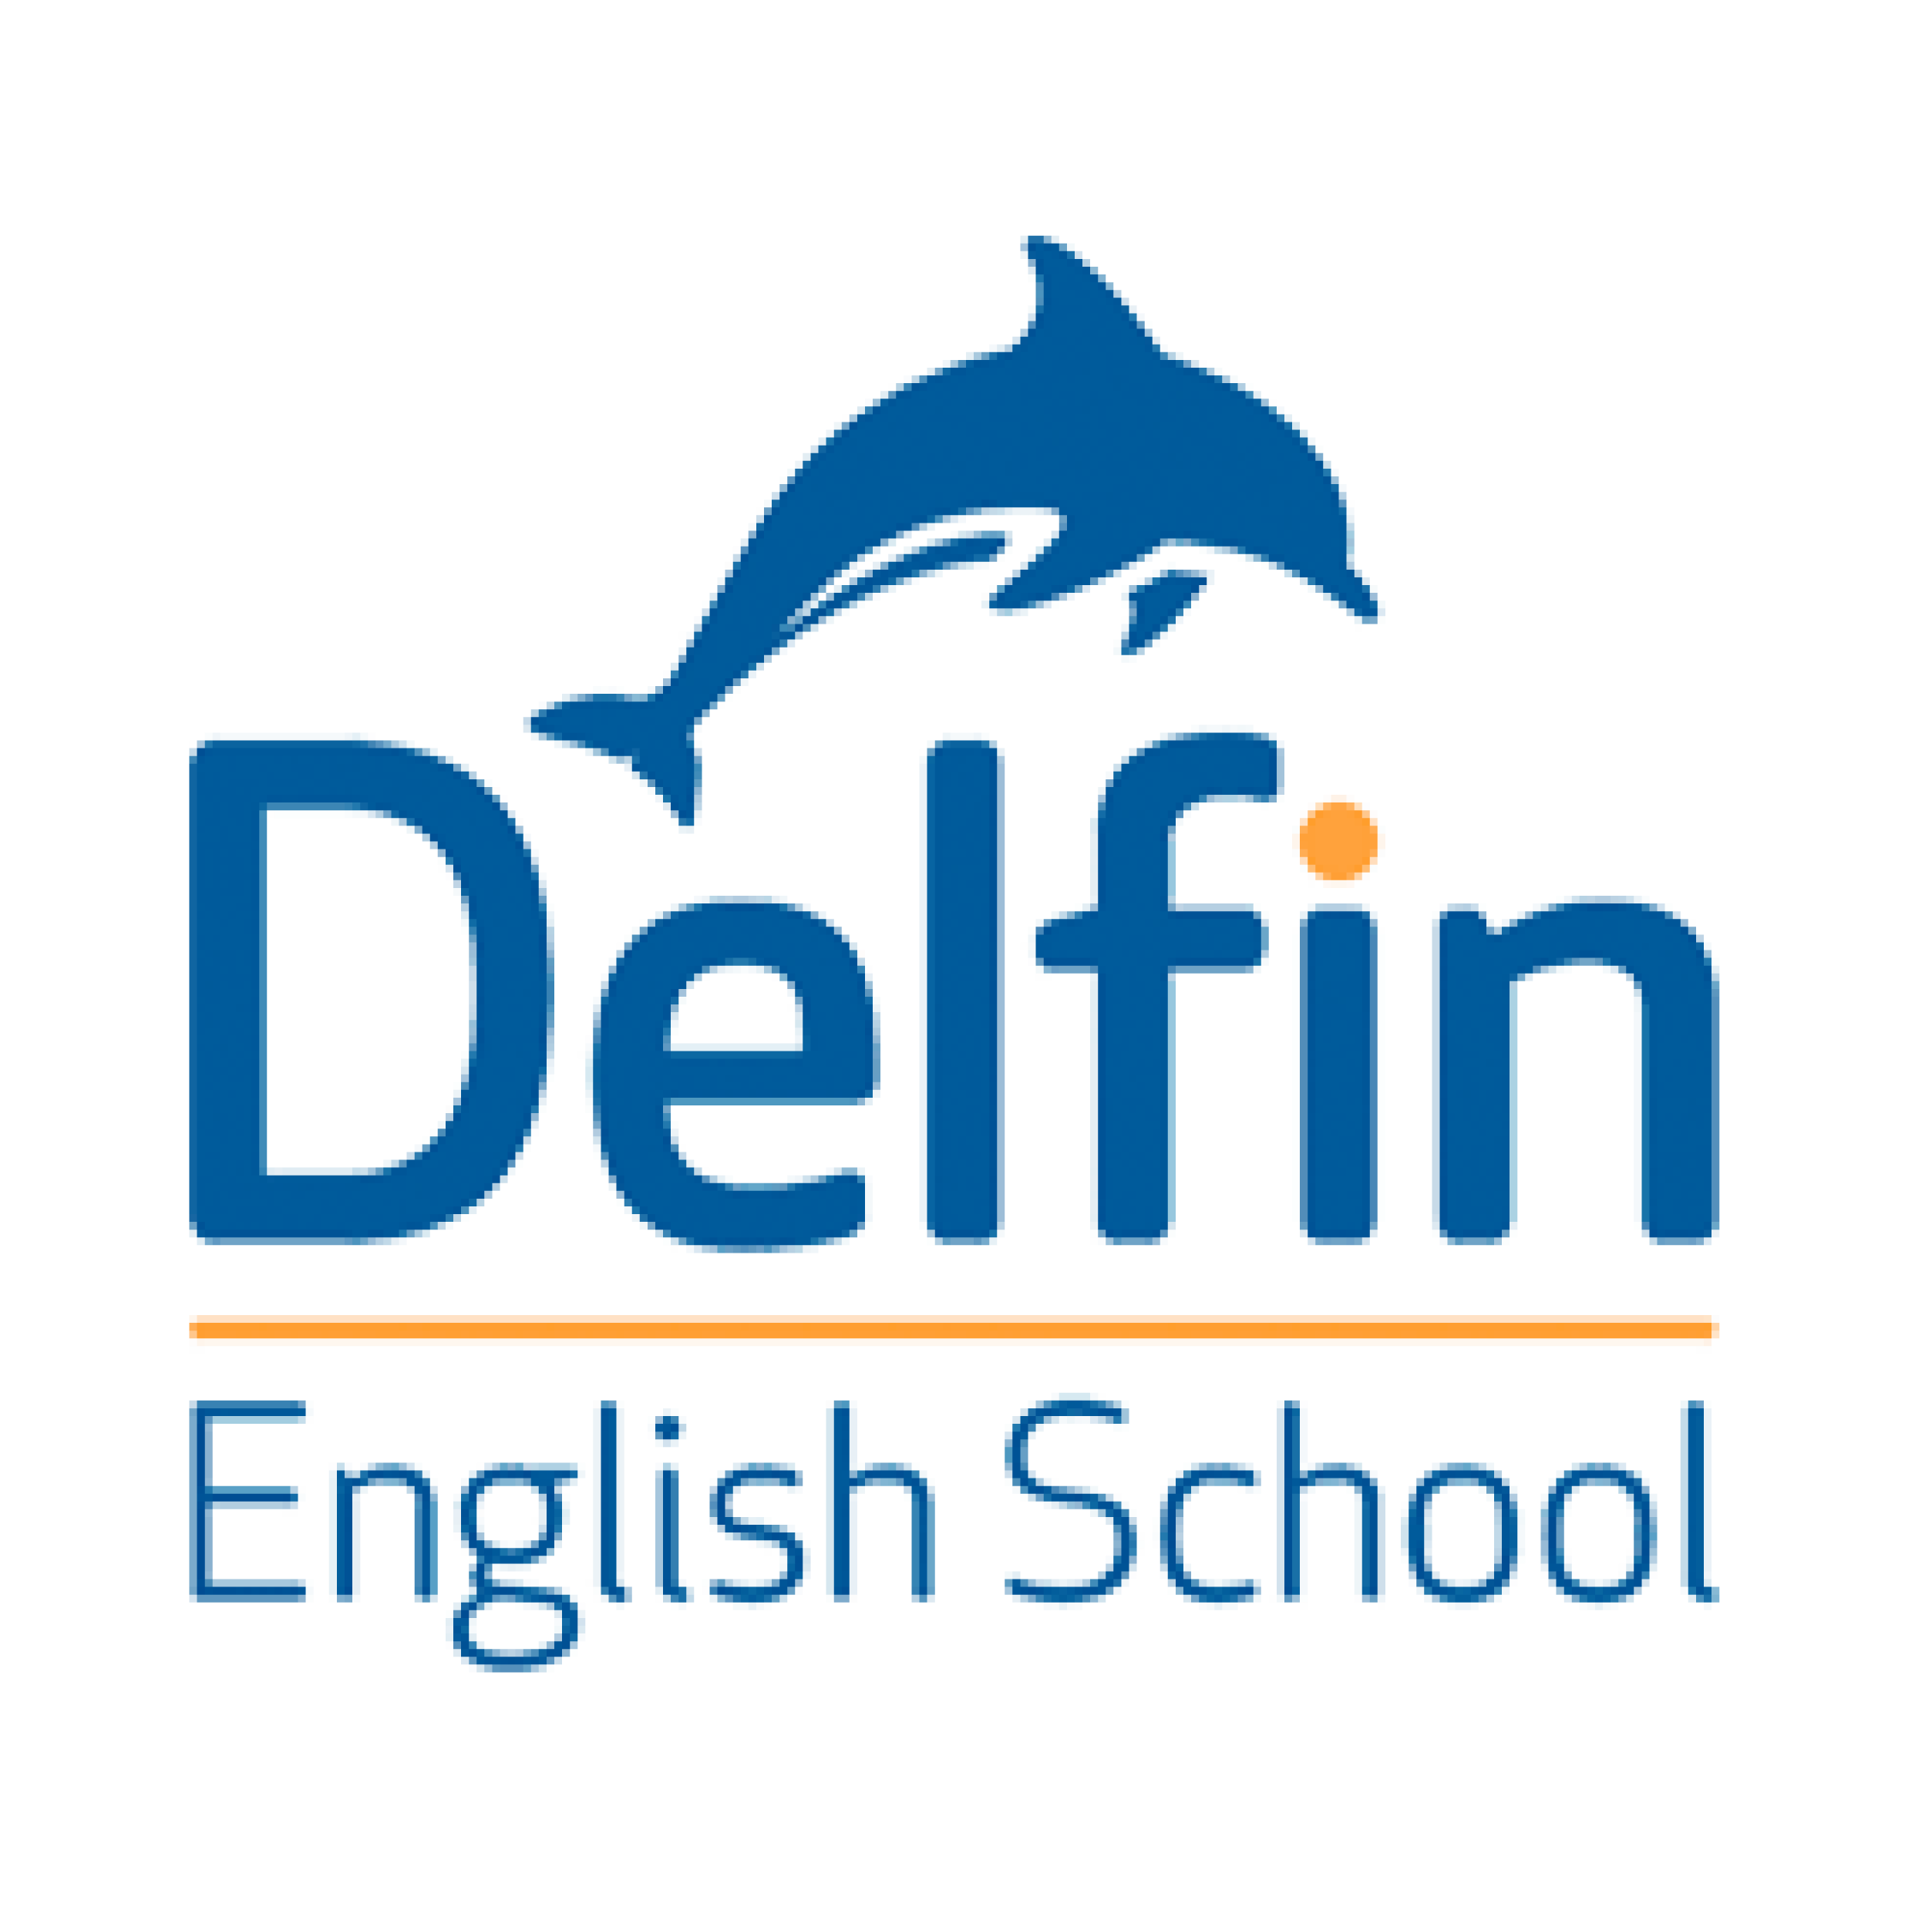 Delfin School